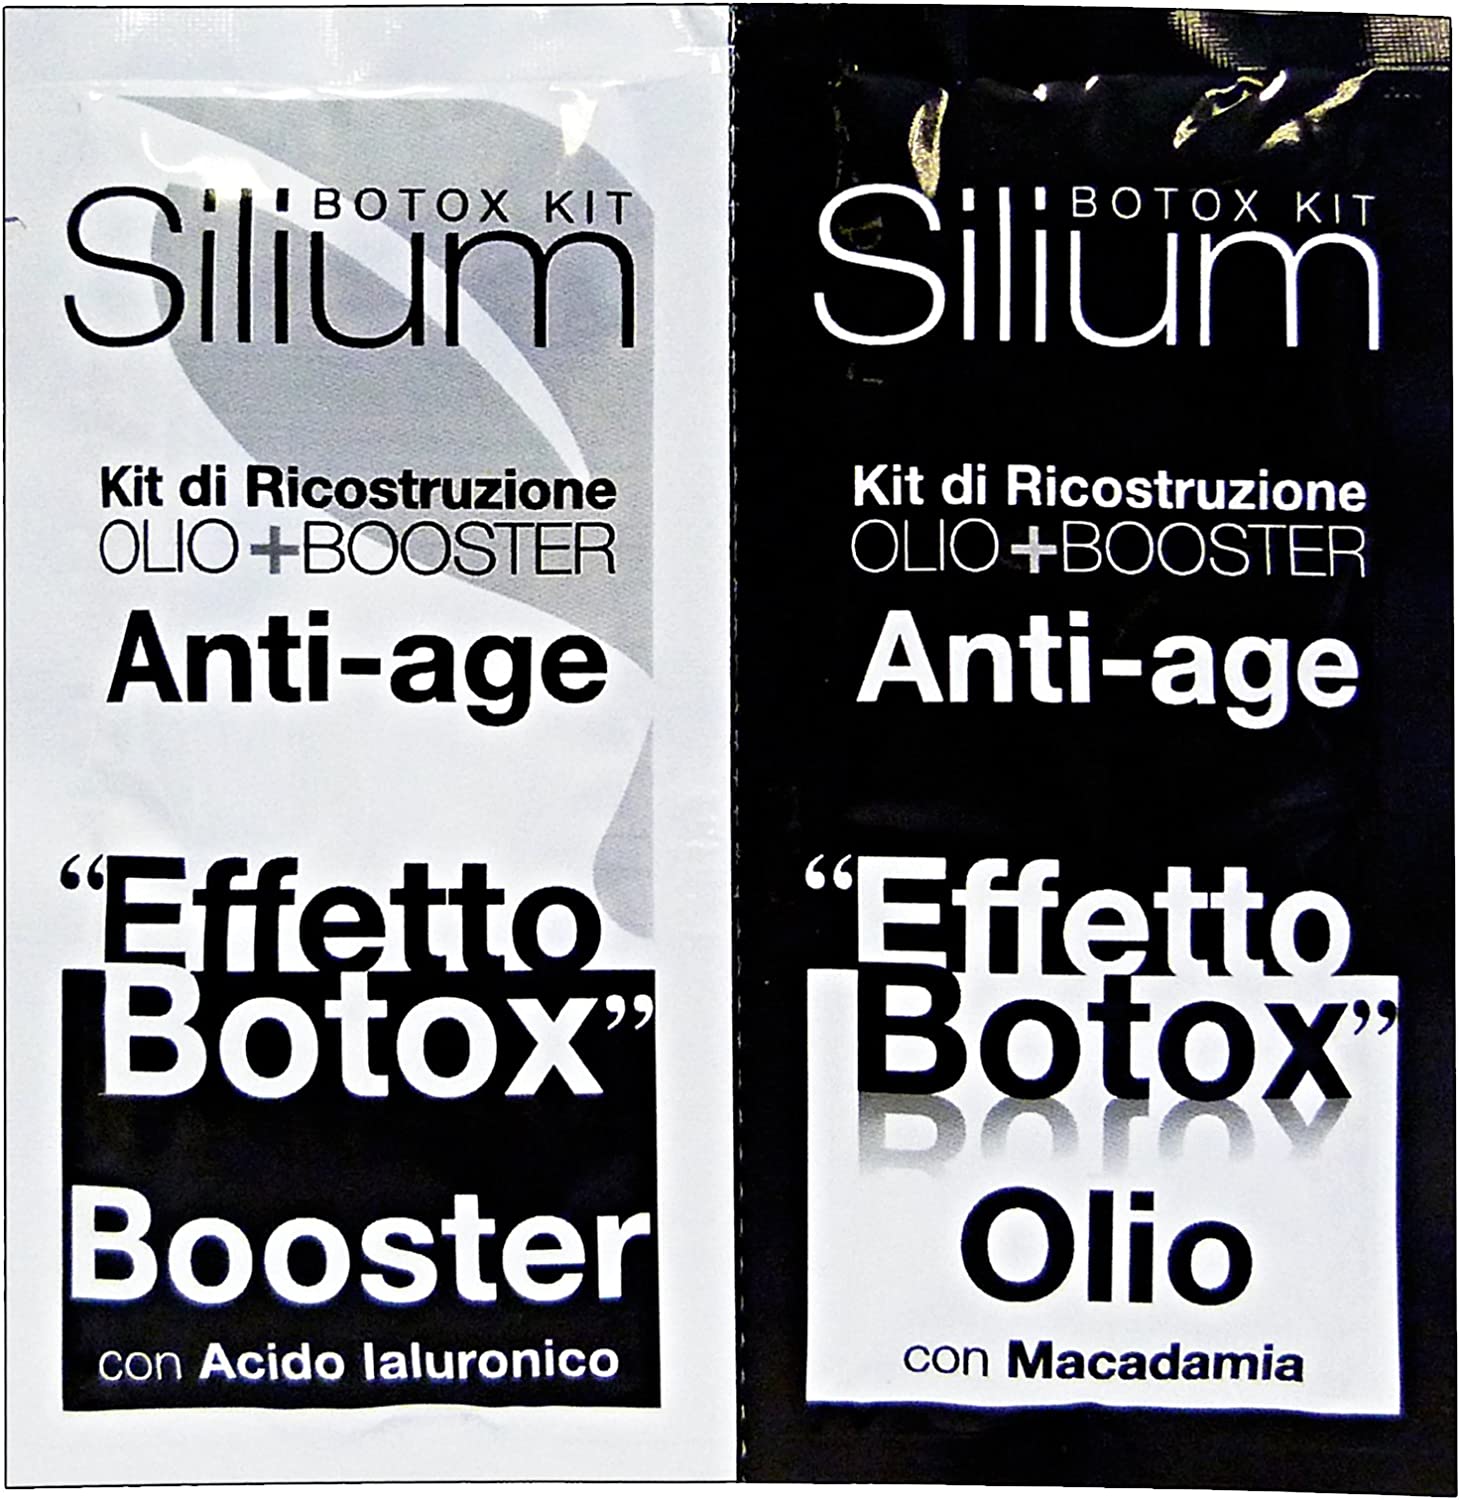 
                                    
                                Prodotti anti-age per capelli splendenti, dalle maschere ai sieri